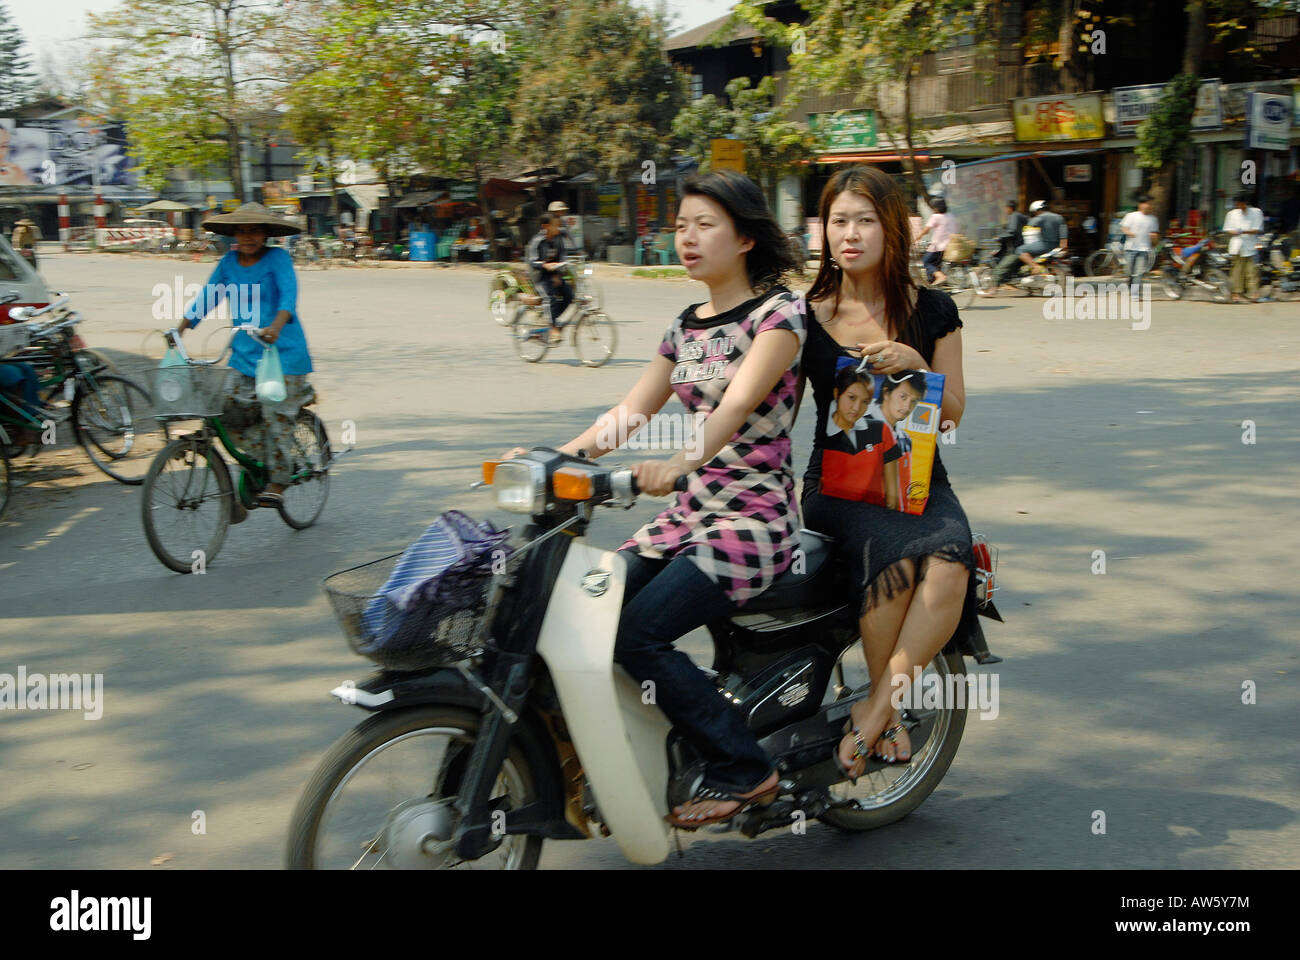 Dos jóvenes mujeres están conduciendo su moto, disfrutando de unas compras Foto de stock